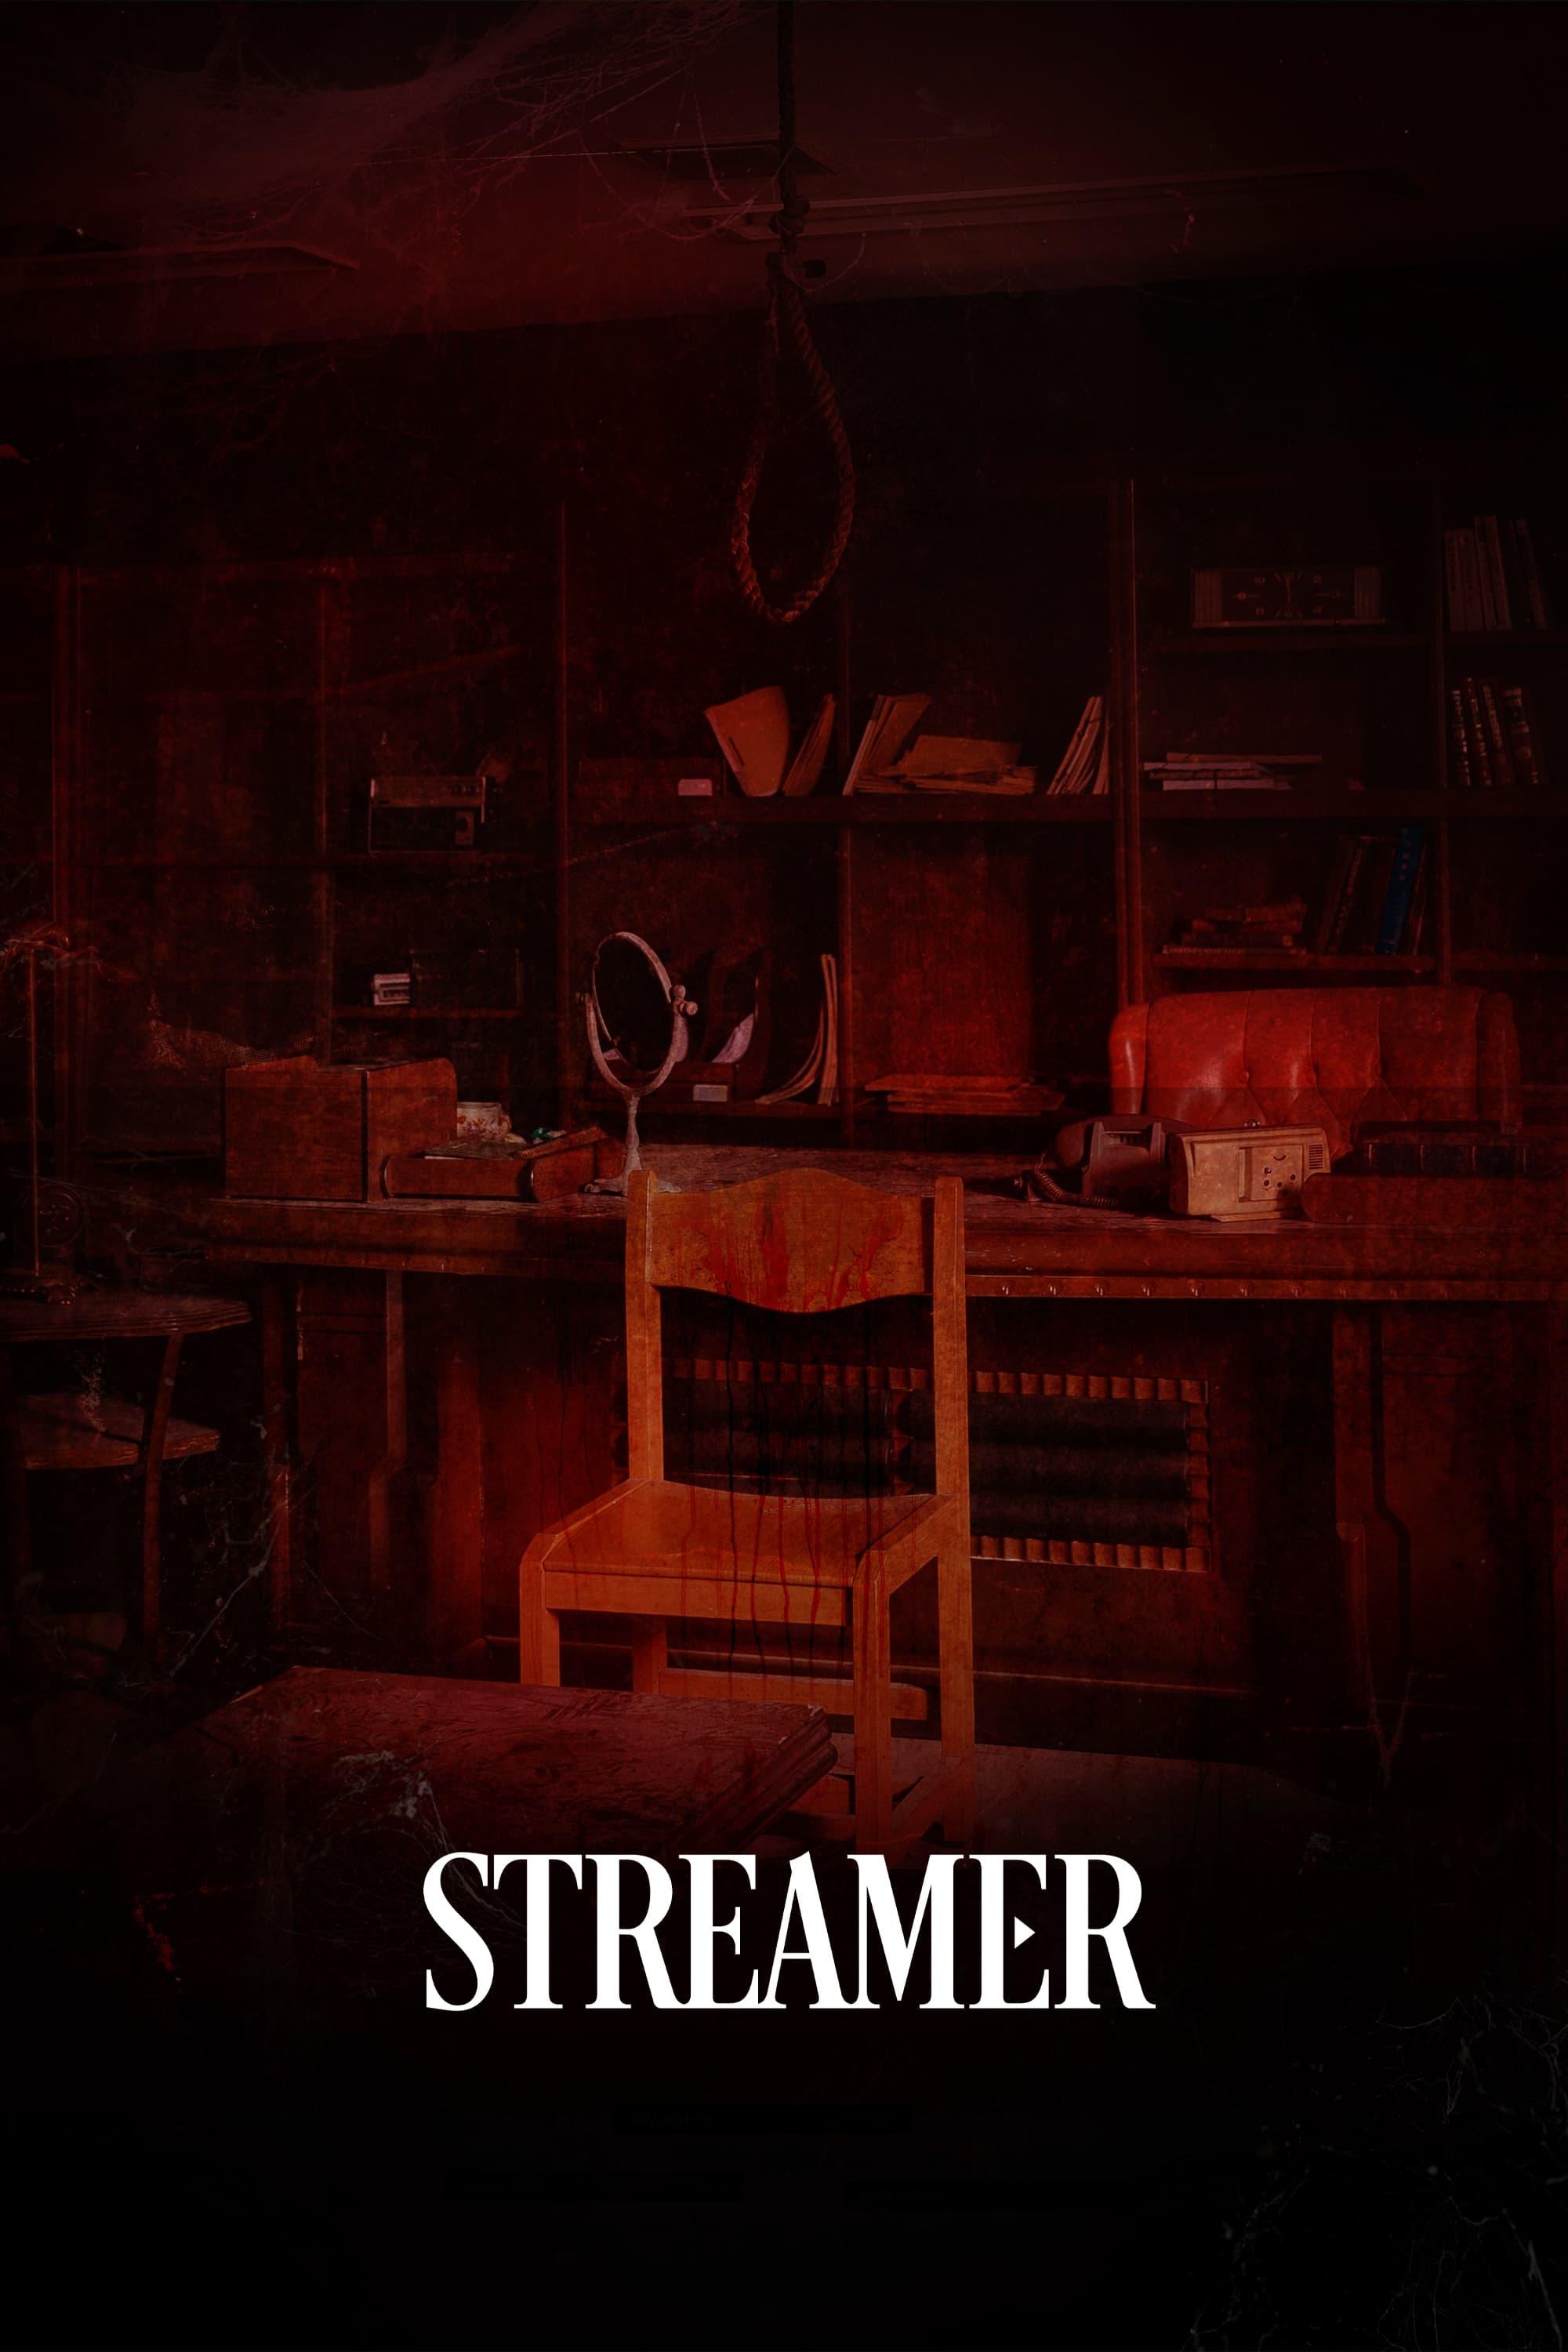 Streamer poster